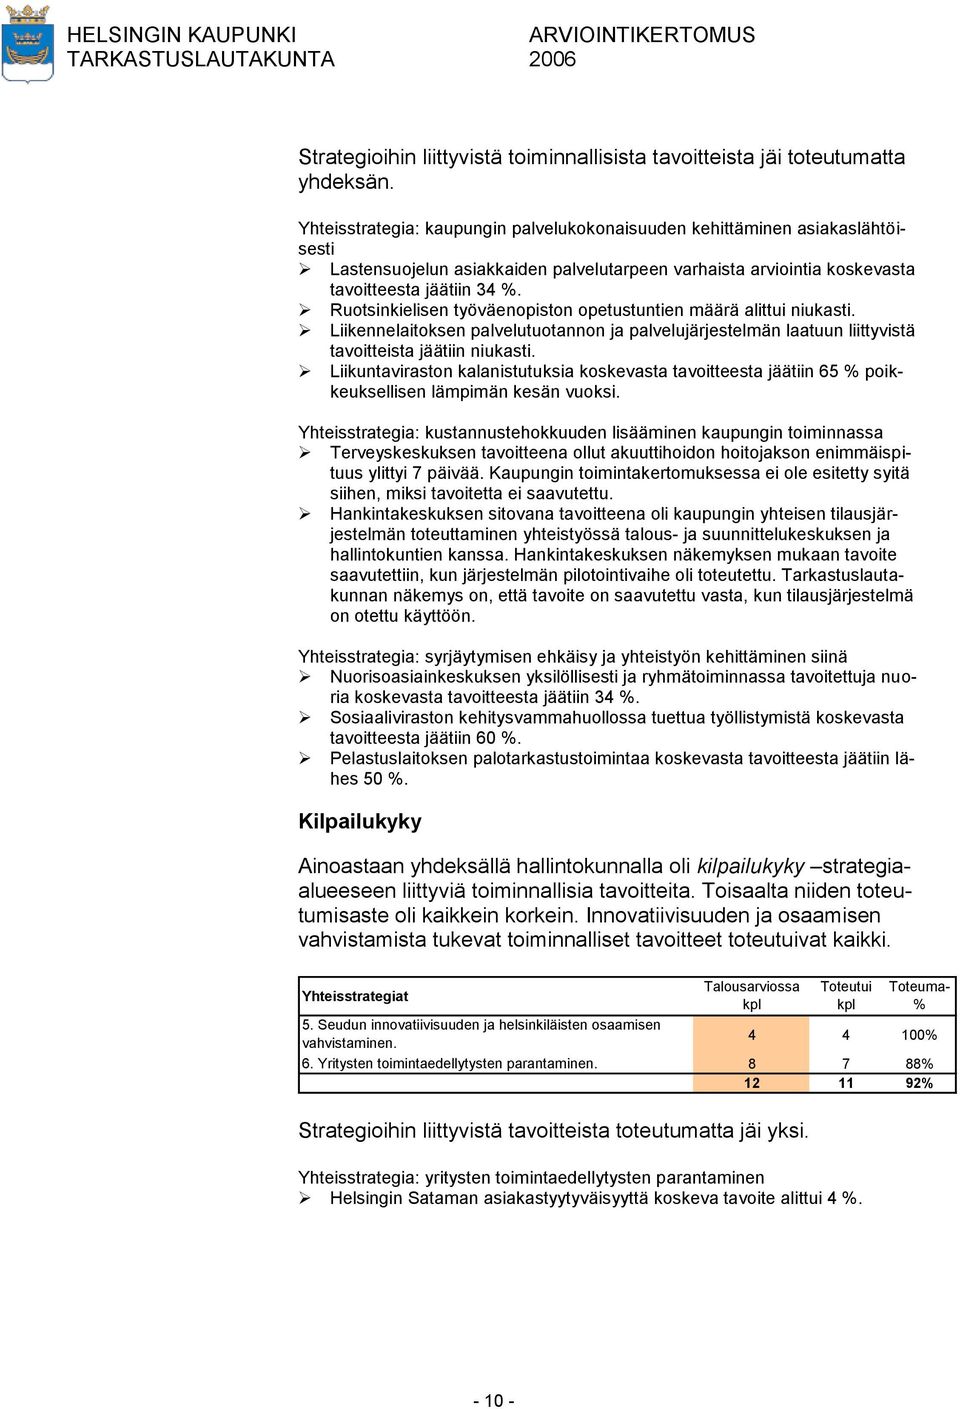 Ruotsinkielisen työväenopiston opetustuntien määrä alittui niukasti. Liikennelaitoksen palvelutuotannon ja palvelujärjestelmän laatuun liittyvistä tavoitteista jäätiin niukasti.